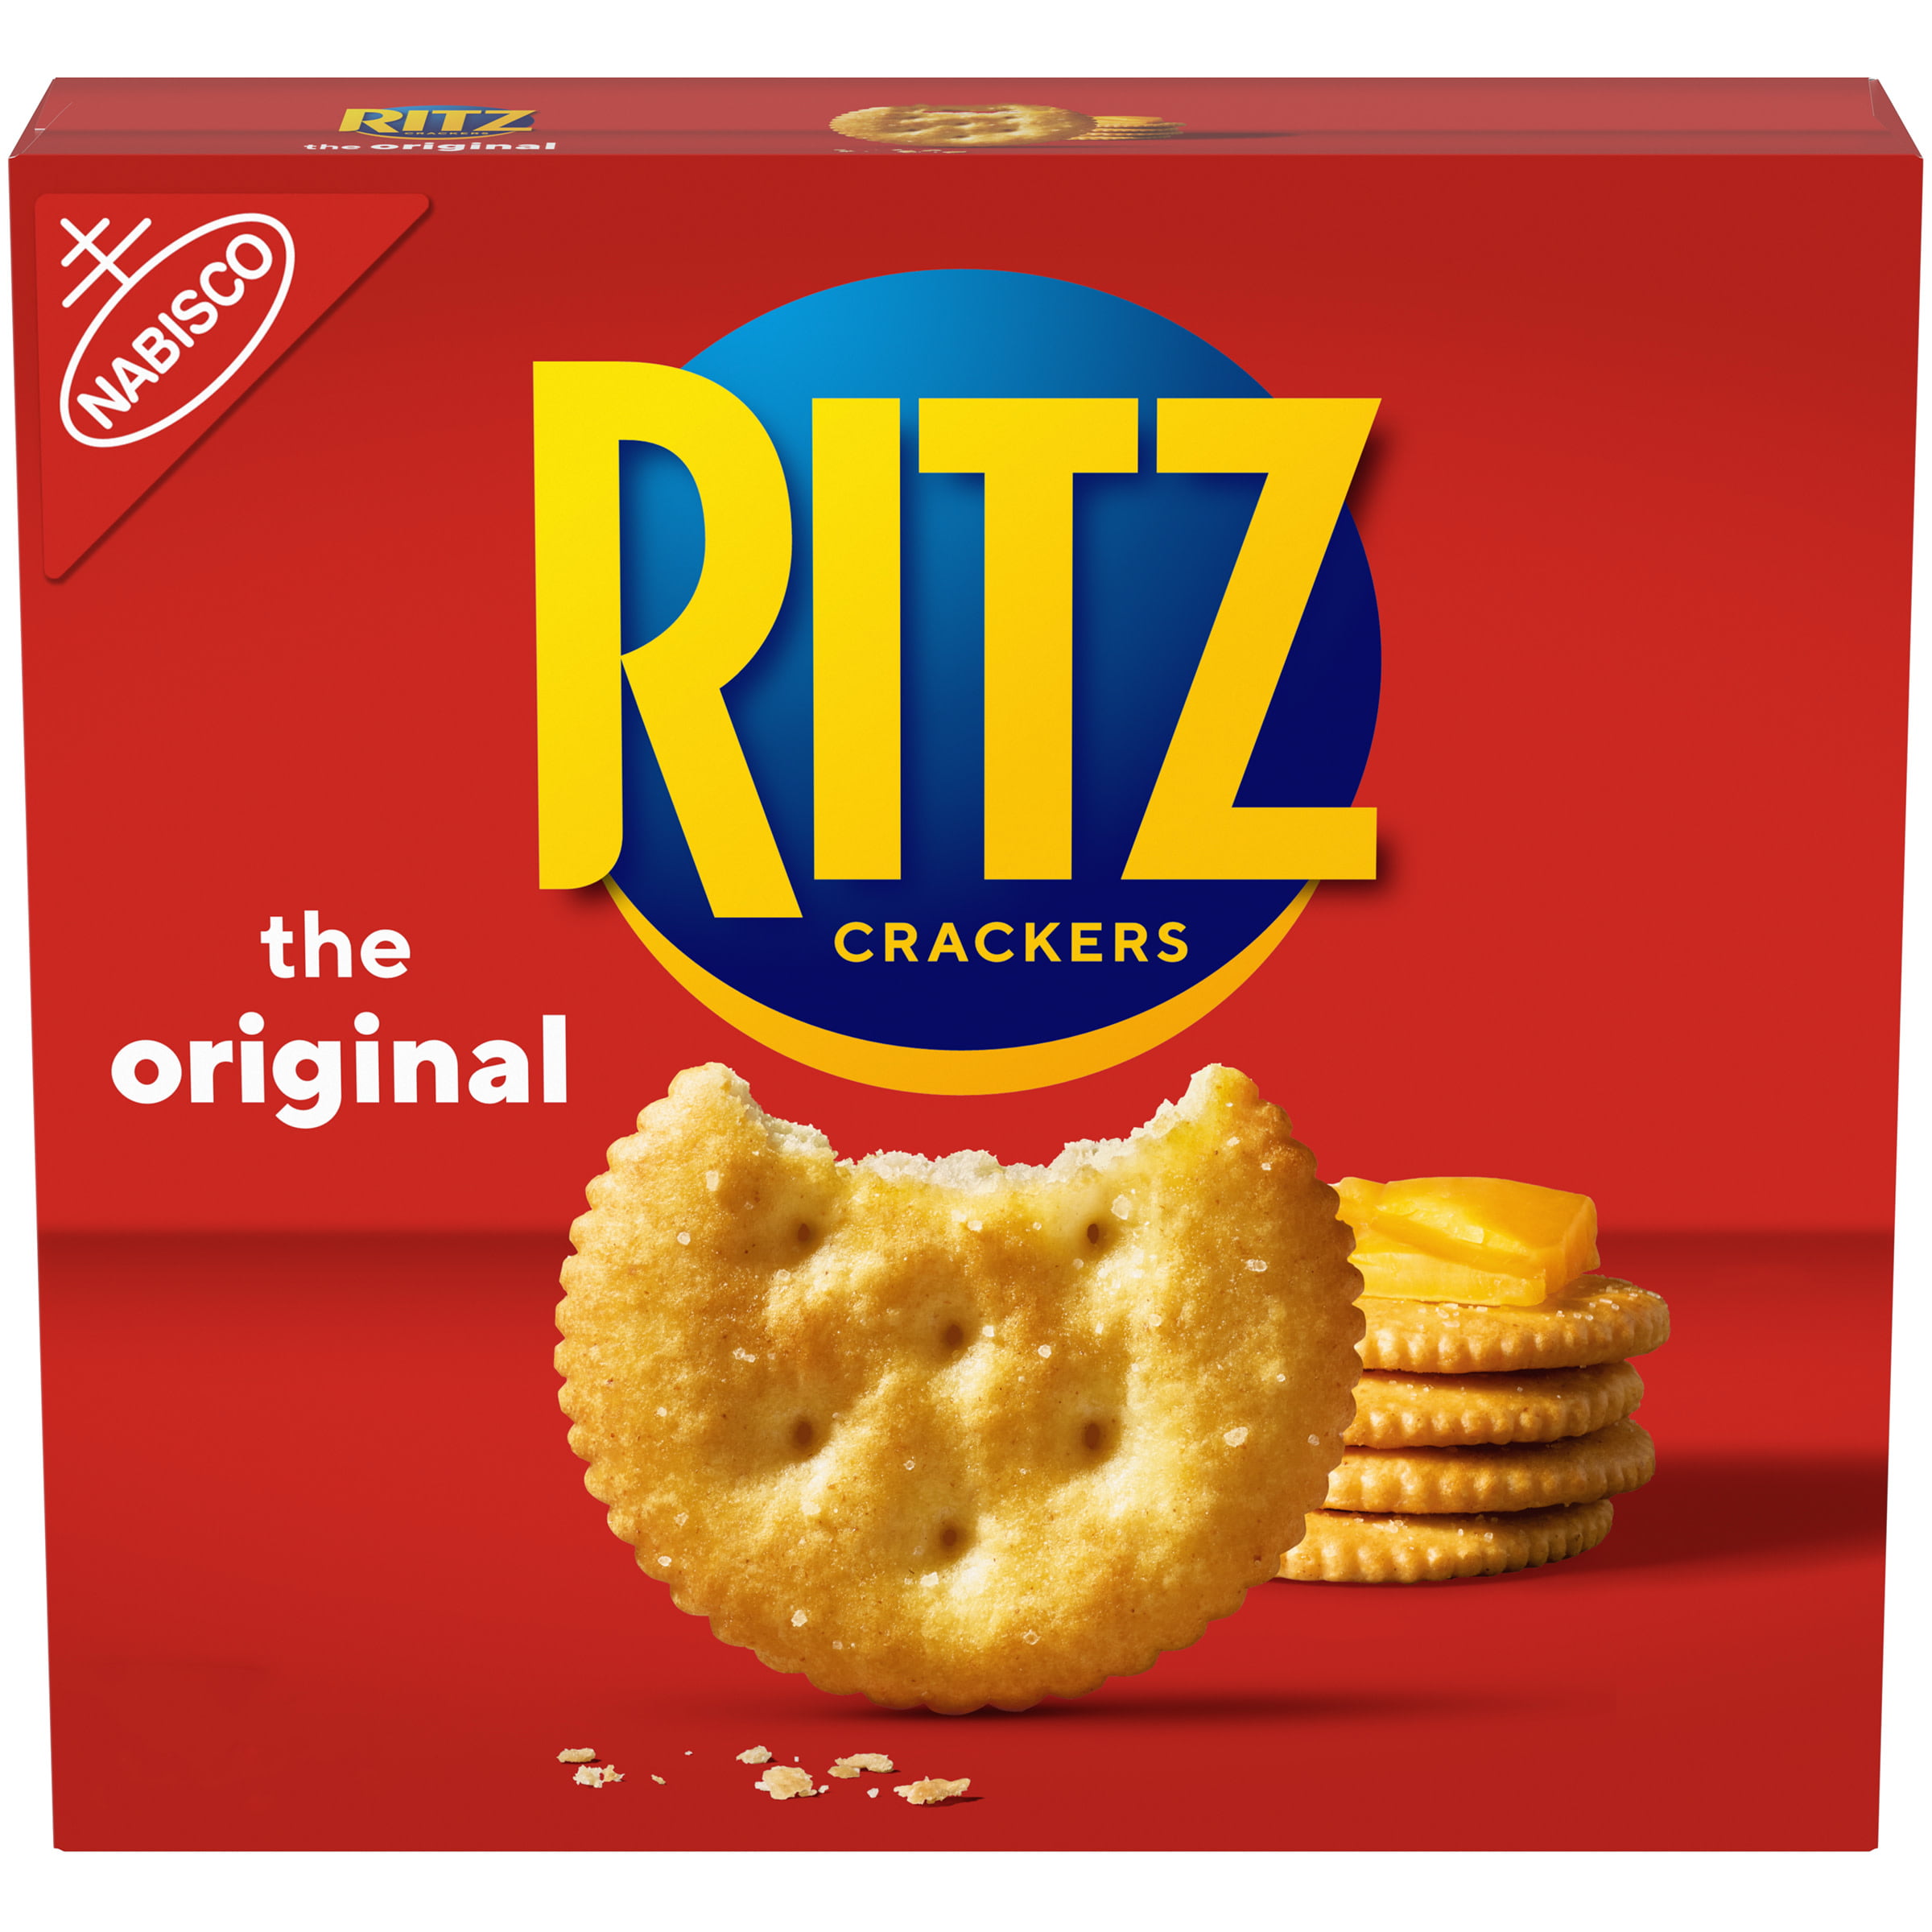 ritz cracker factory tour